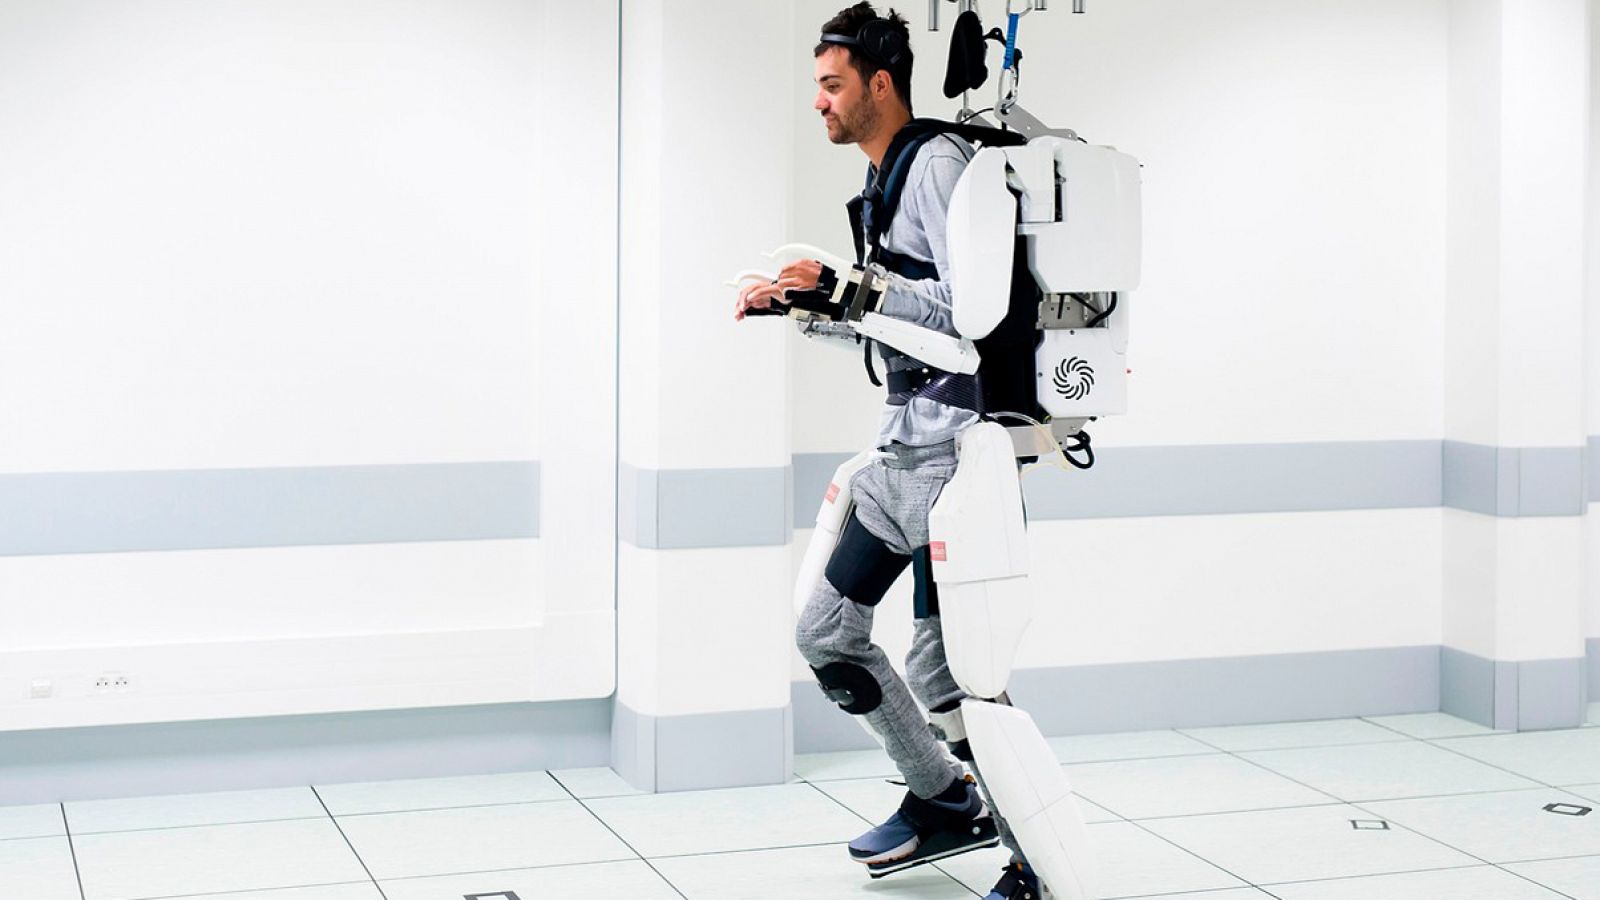 Imagen del paciente tetrapléjico, Thibault, probando el exoesqueleto en el laboratorio de la Universidad de Grenoble. Fuente: Fondo de Donación Clinatec, via Afp